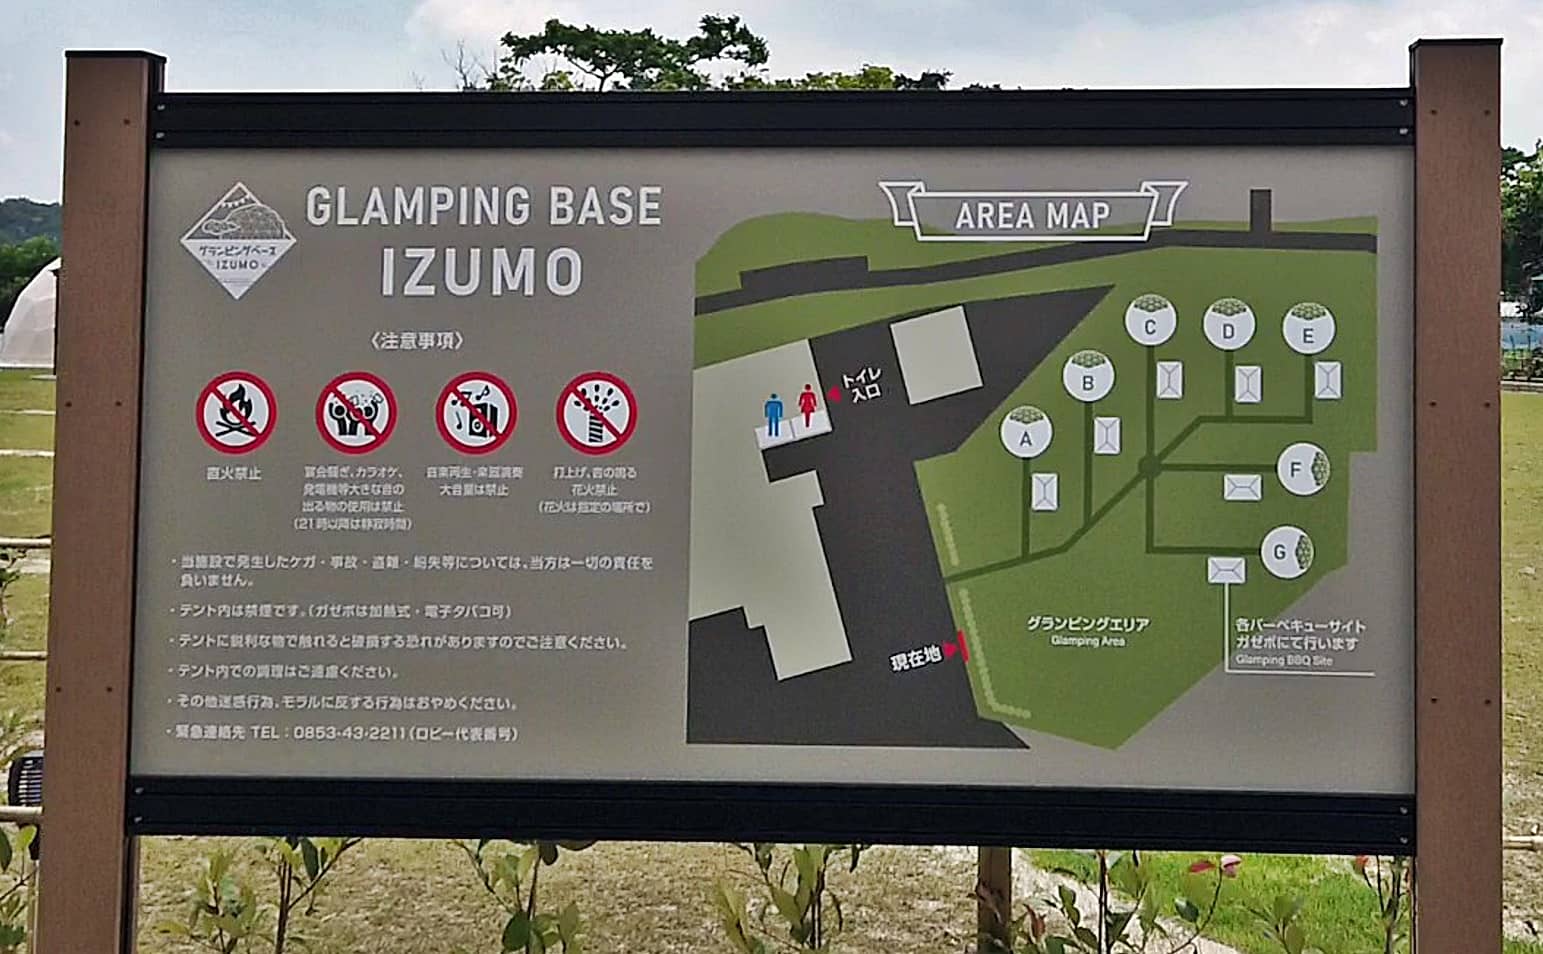 グランピングベースIZUMO エリアマップ